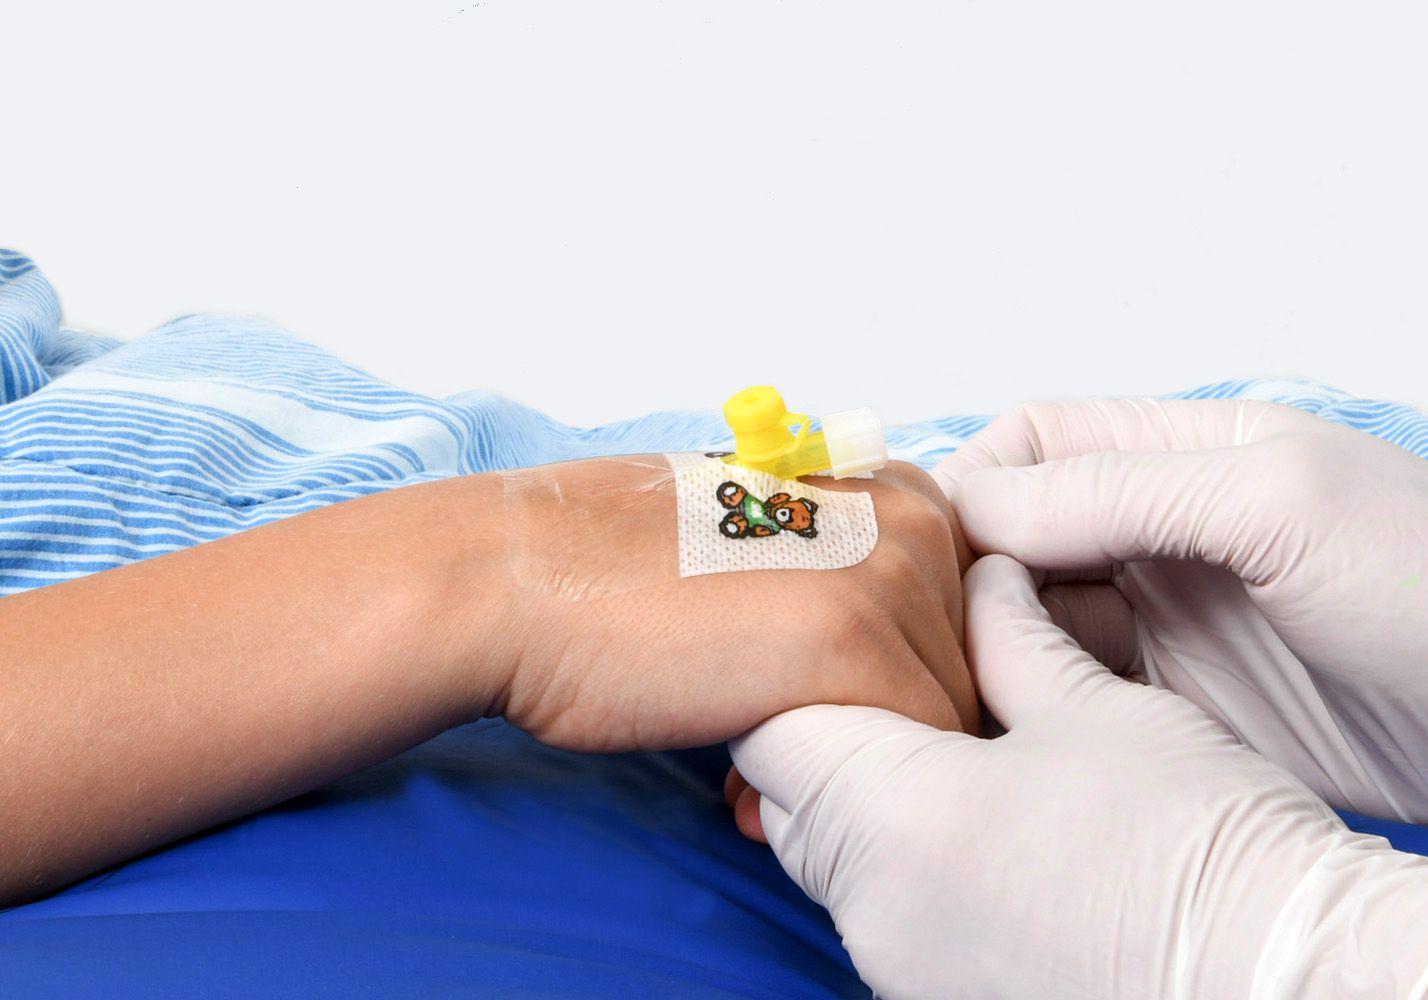 En hand med en gul plastslang insatt. Sjuksköterska håller i handen.